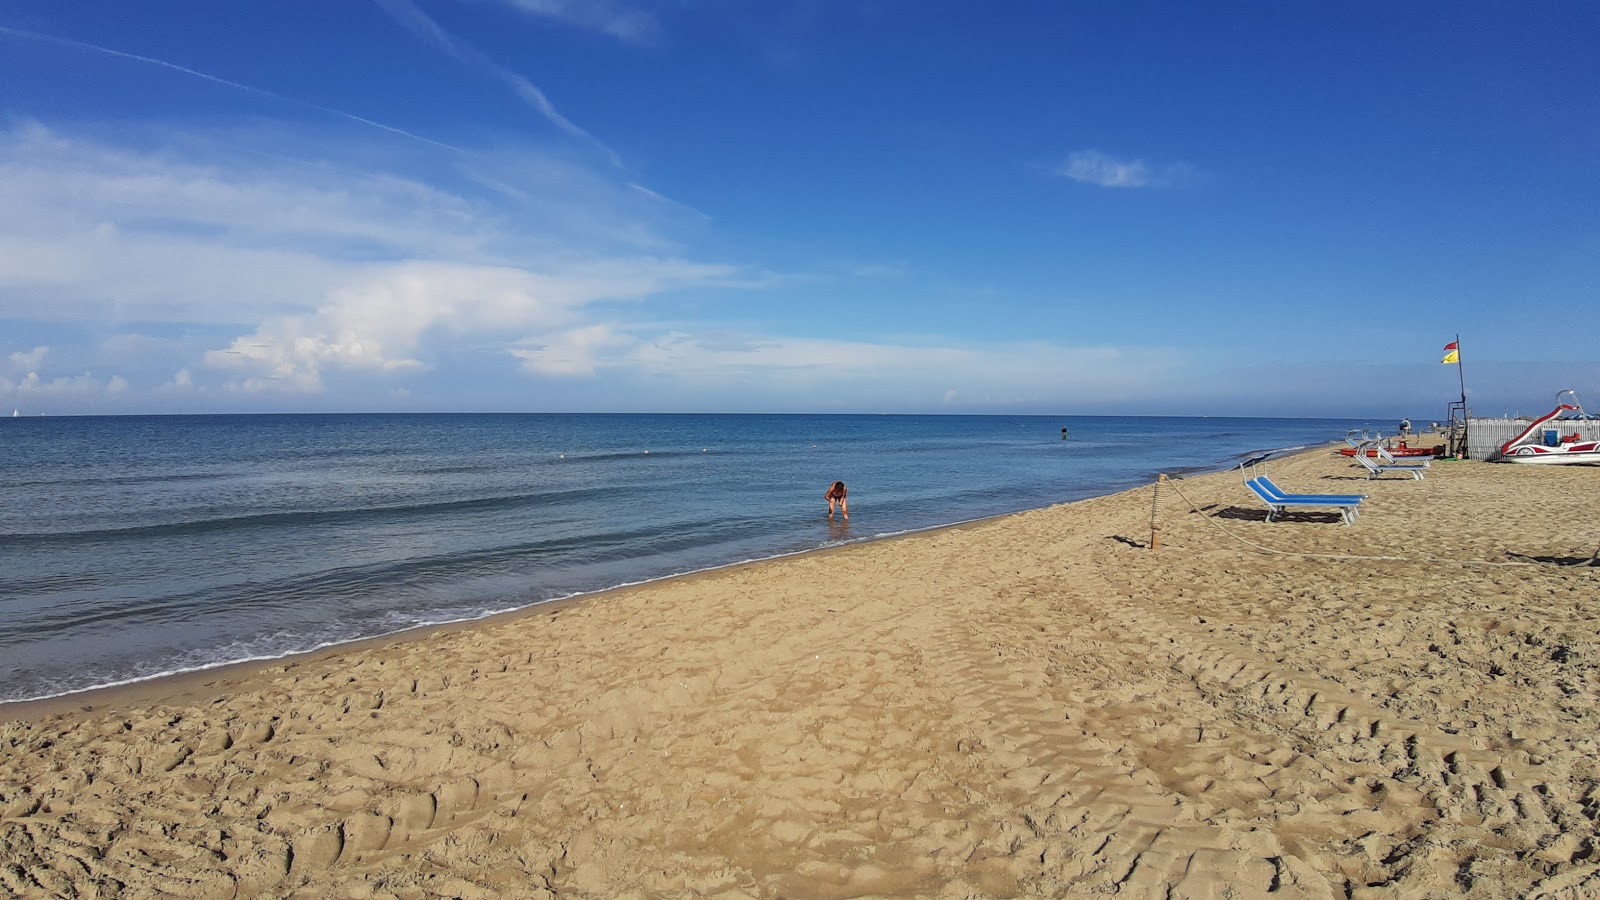 Foto von Spiaggia Libera Tirrenia mit langer gerader strand